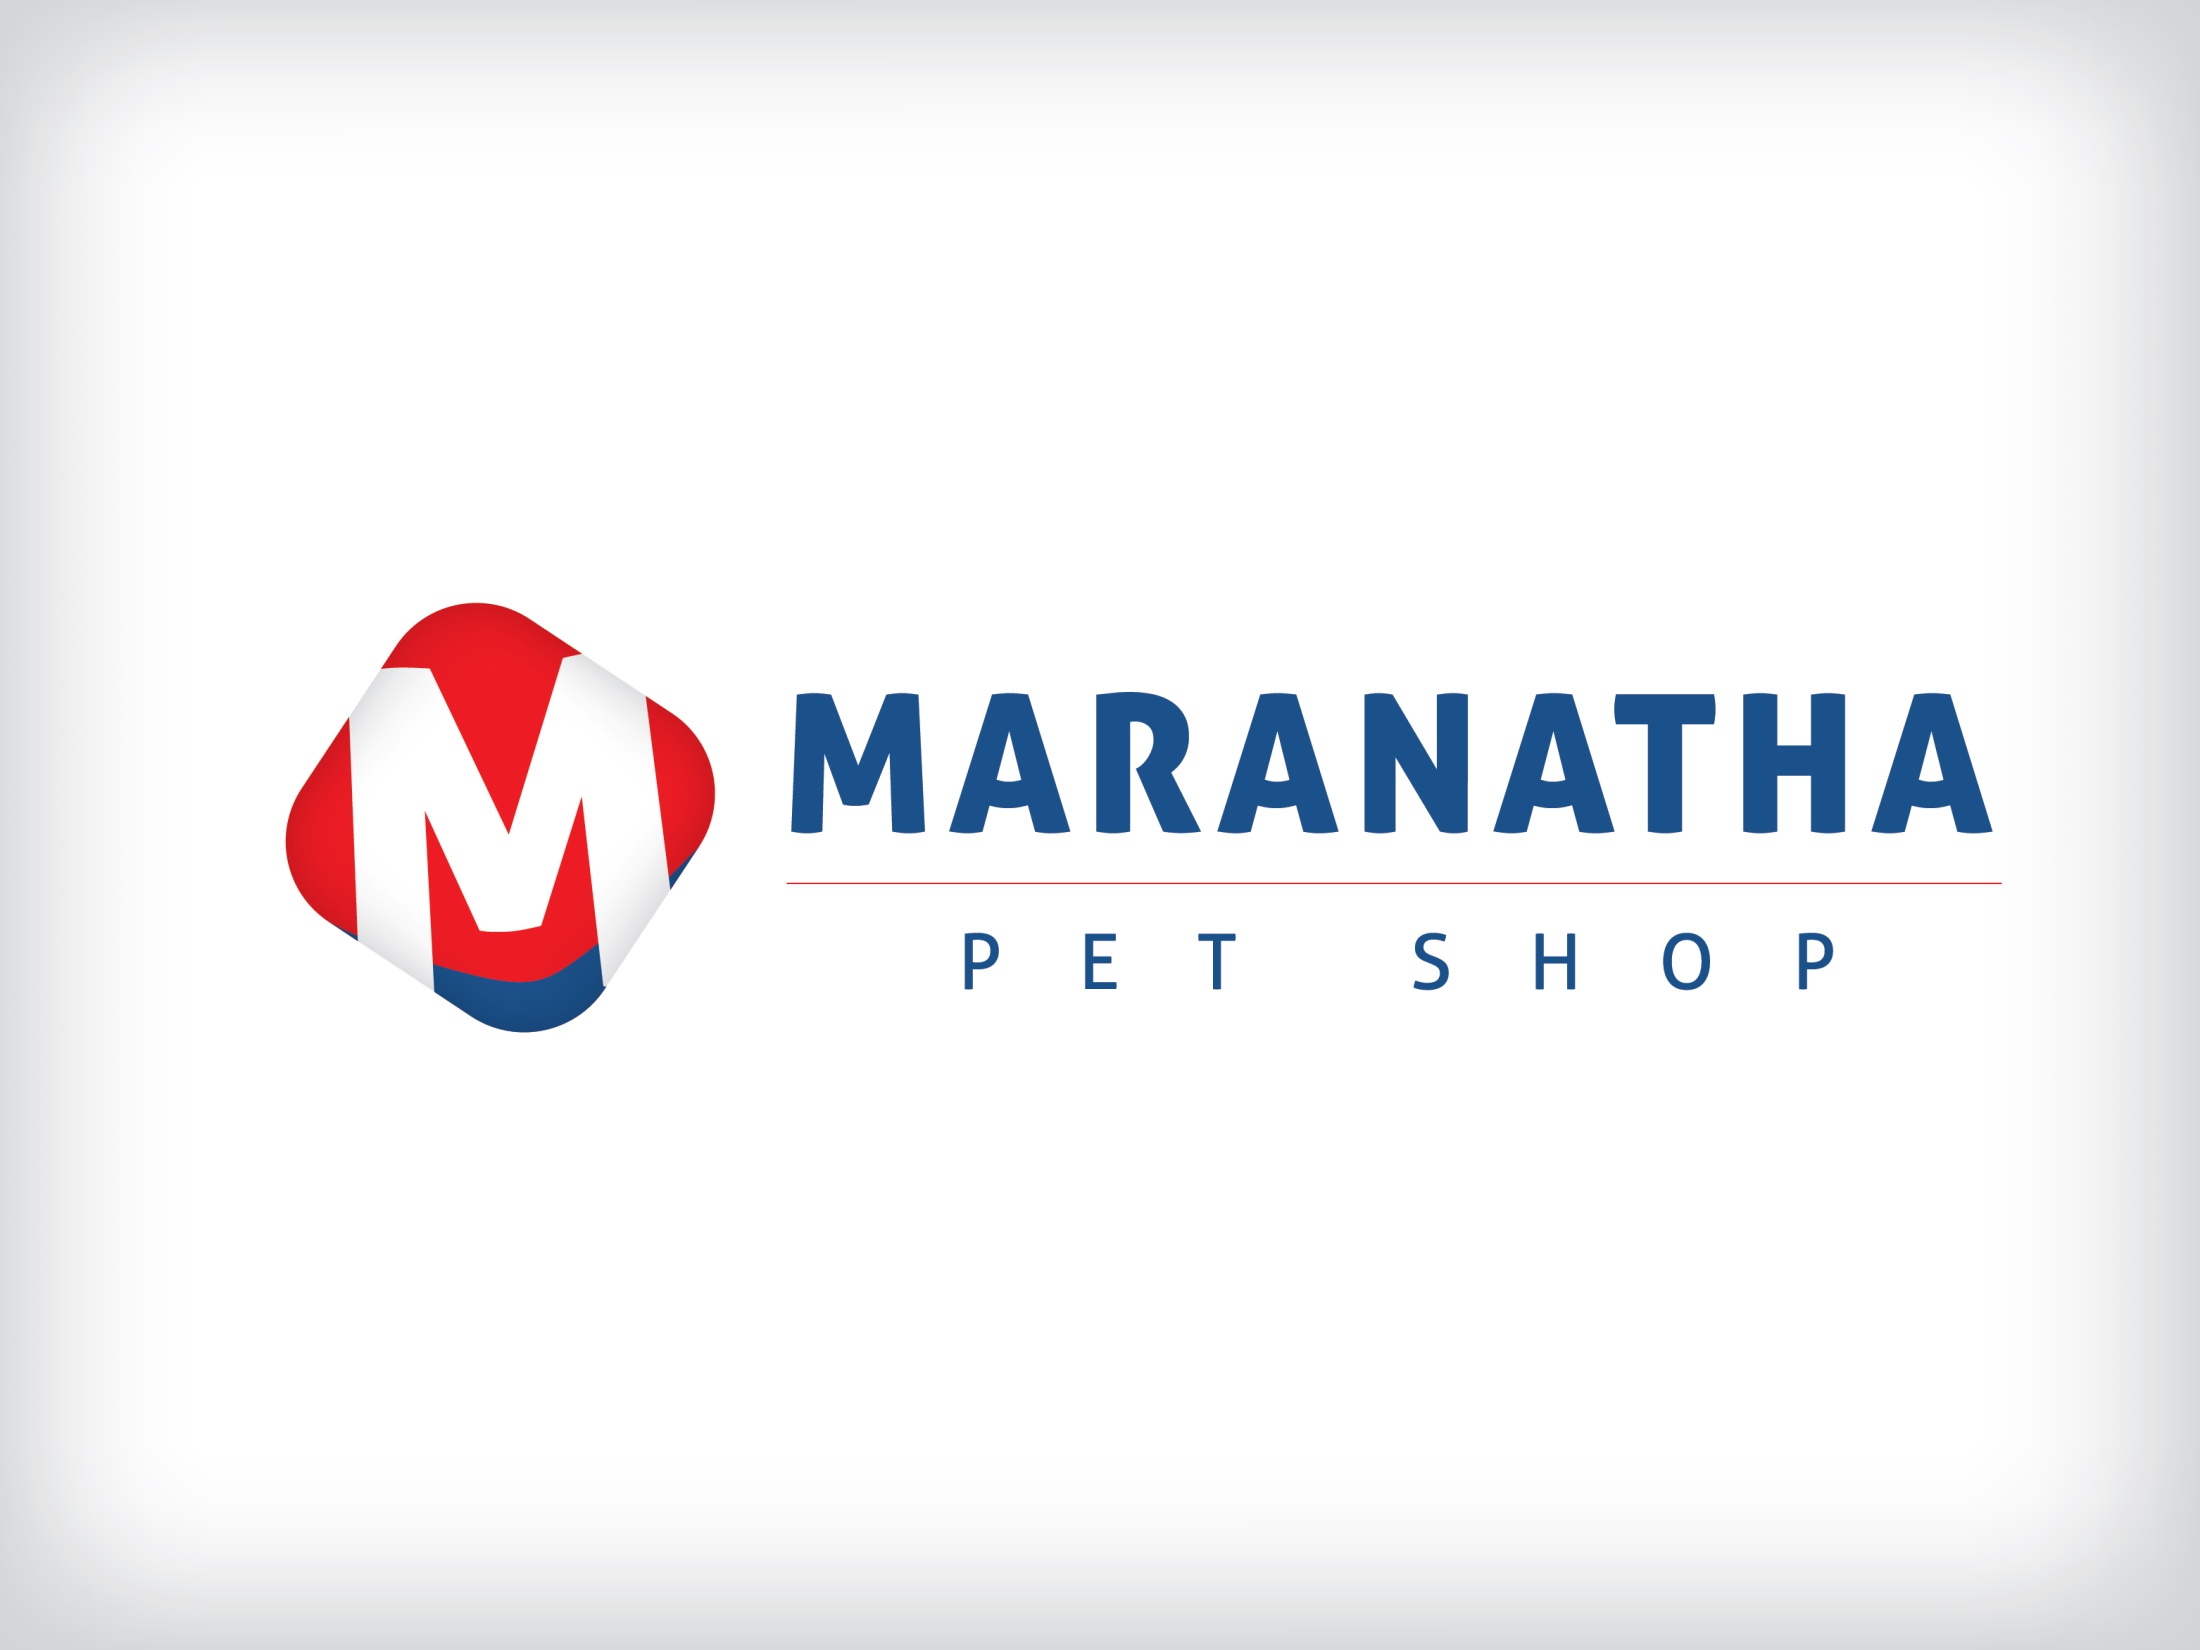 Maranatha - Pet Shop